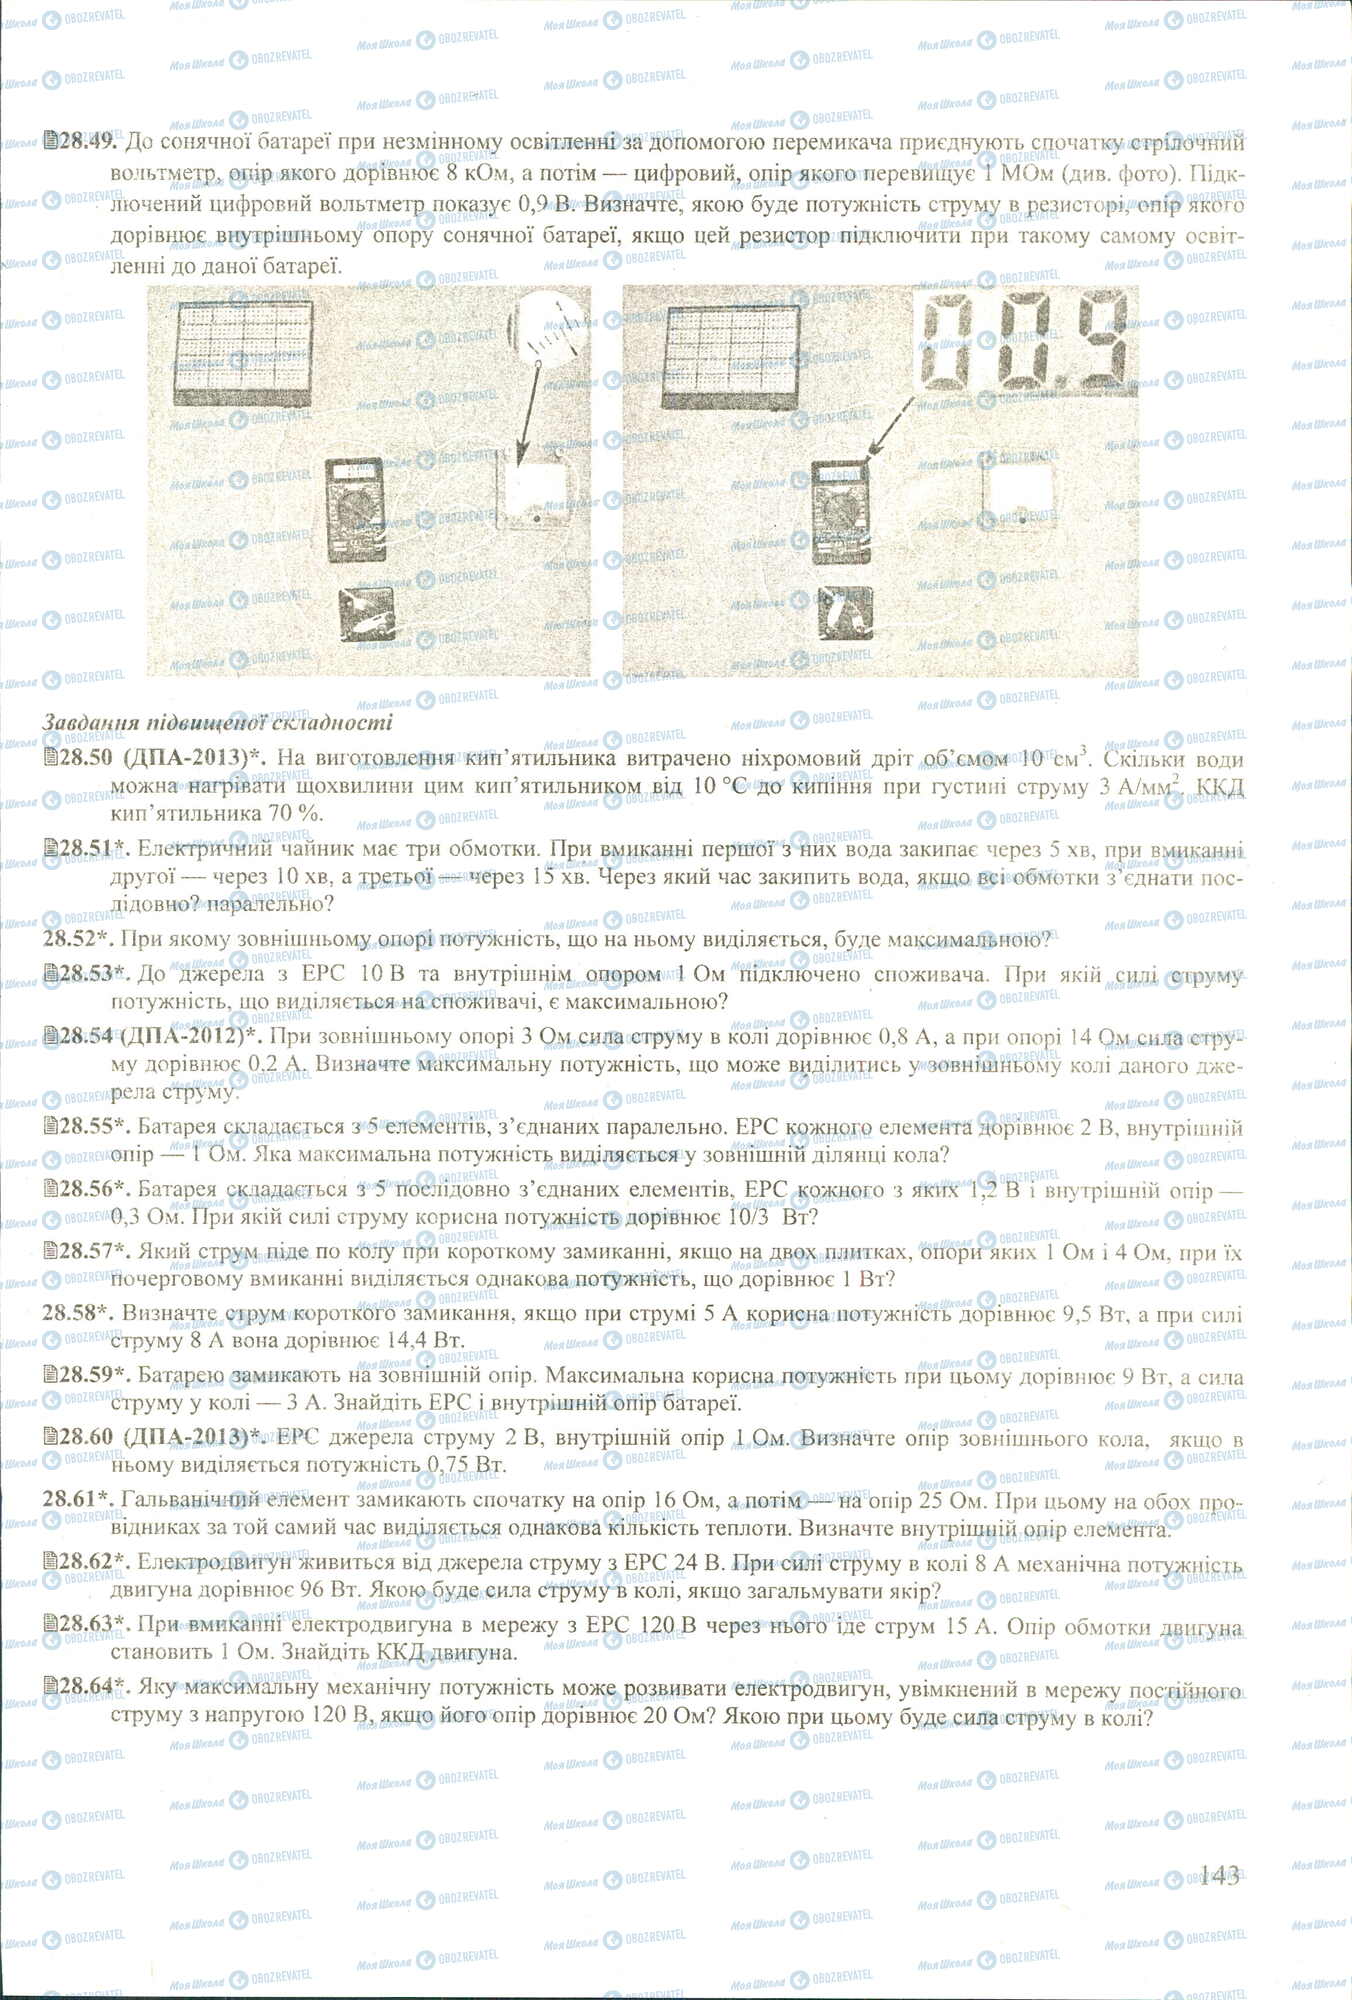 ЗНО Физика 11 класс страница 49-64